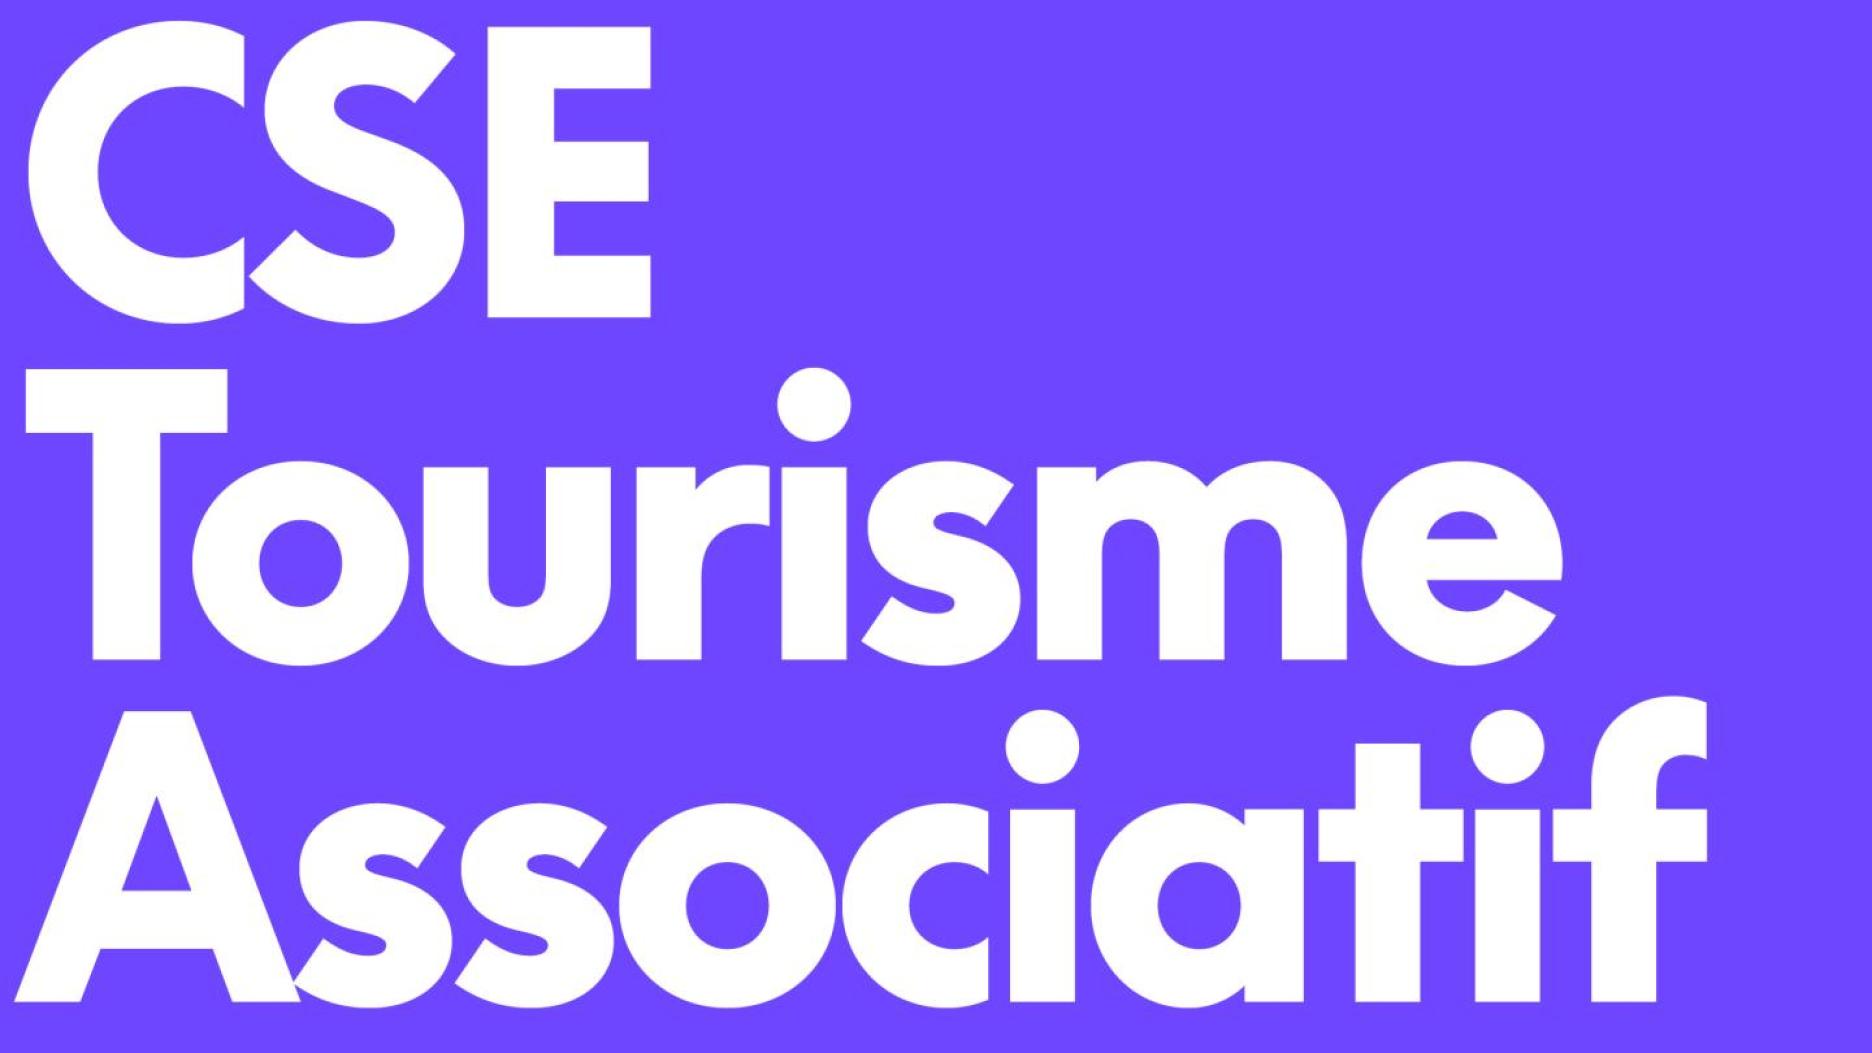 CSE tourisme associations